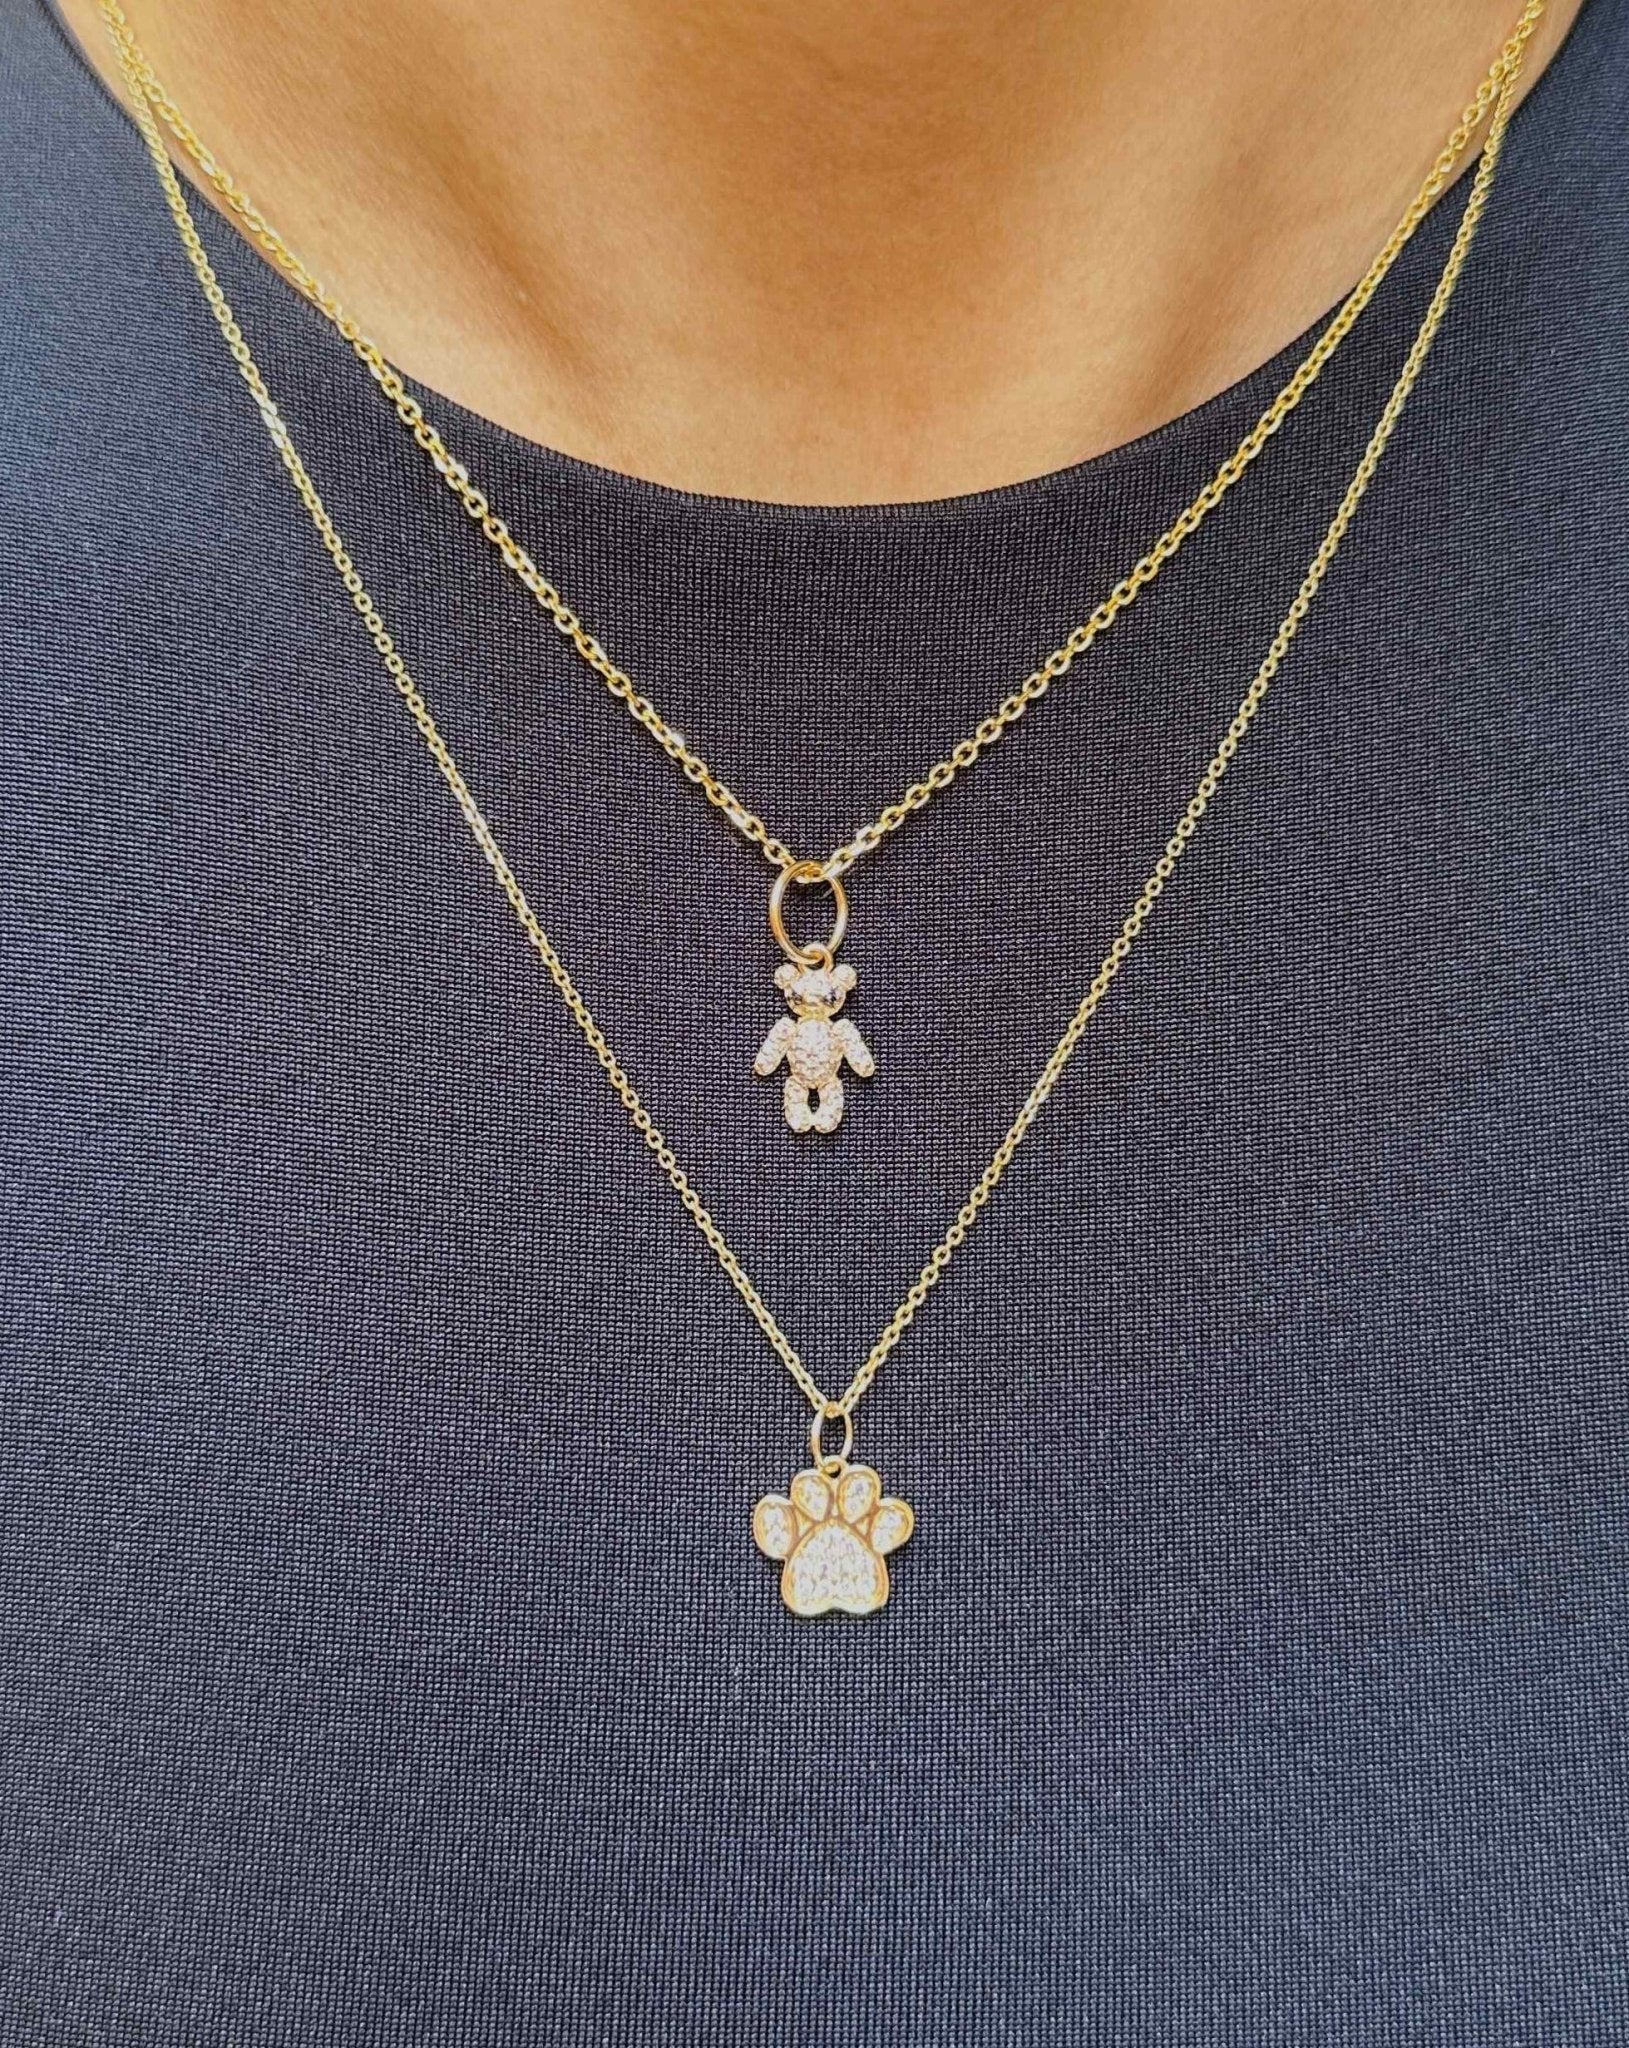 Diamond Teddy Bear Necklace Charm - Sparkle Society